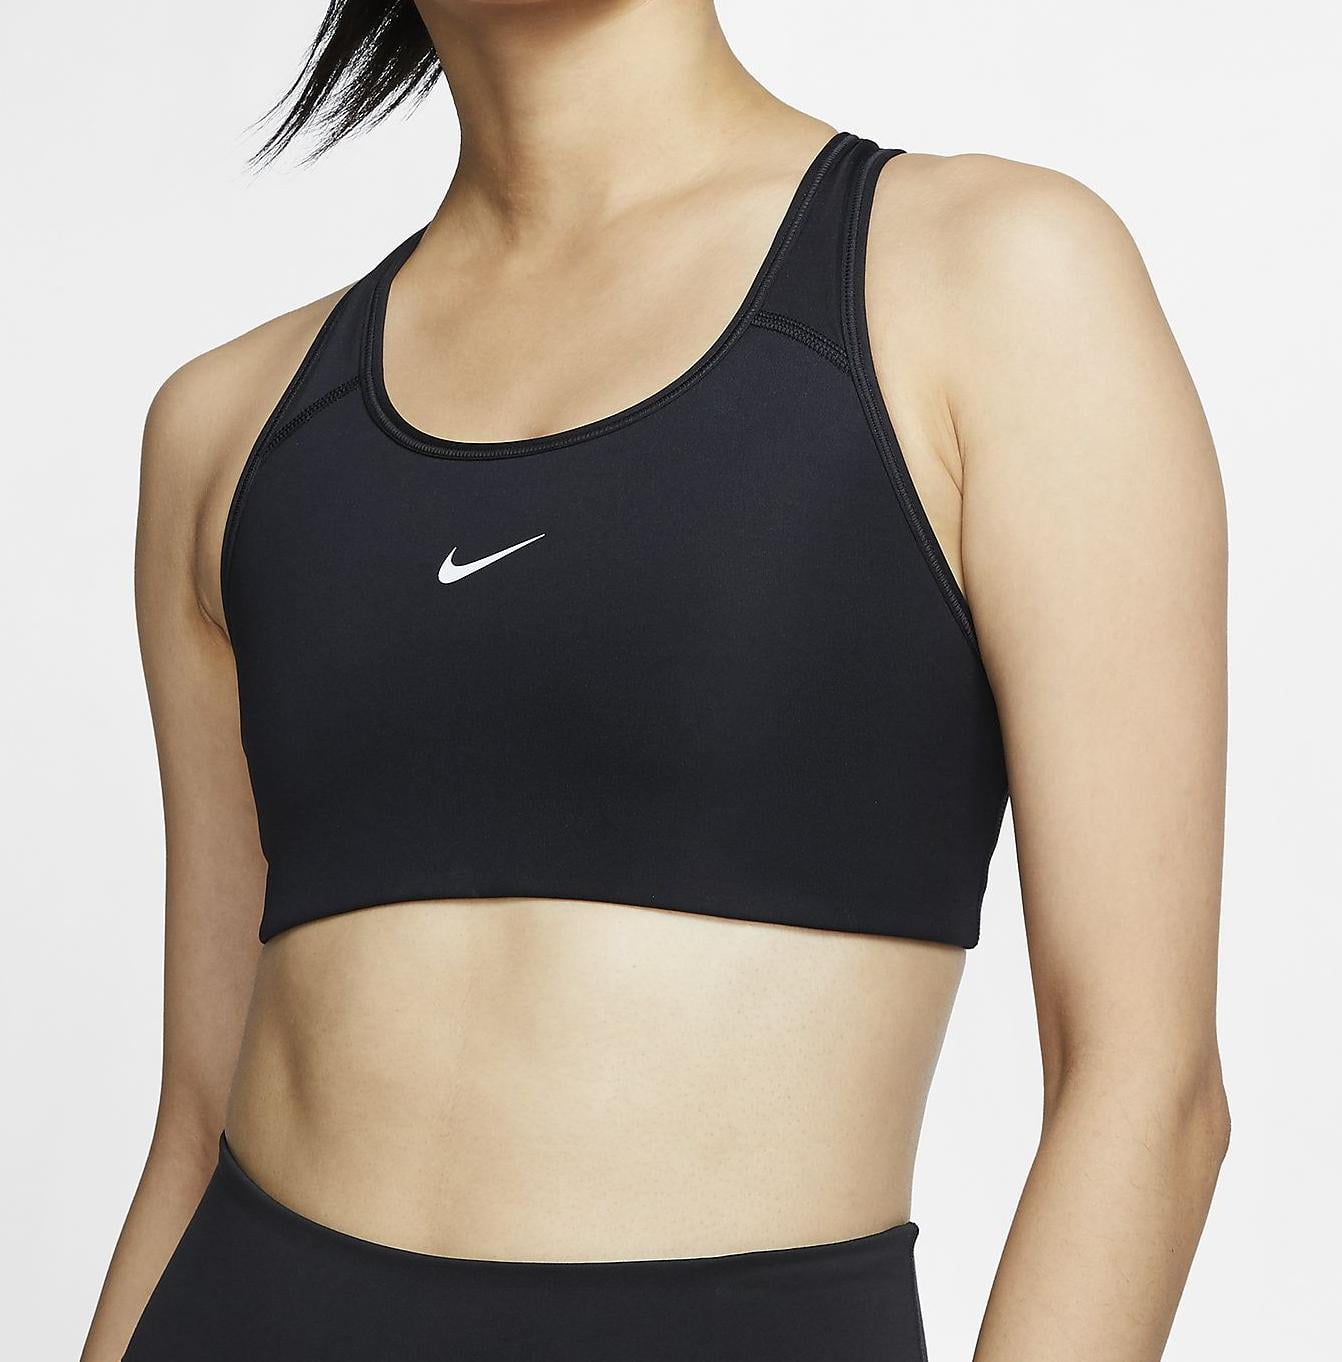 Nike Sports Bra Small Black Color Preowned Dri-Fit